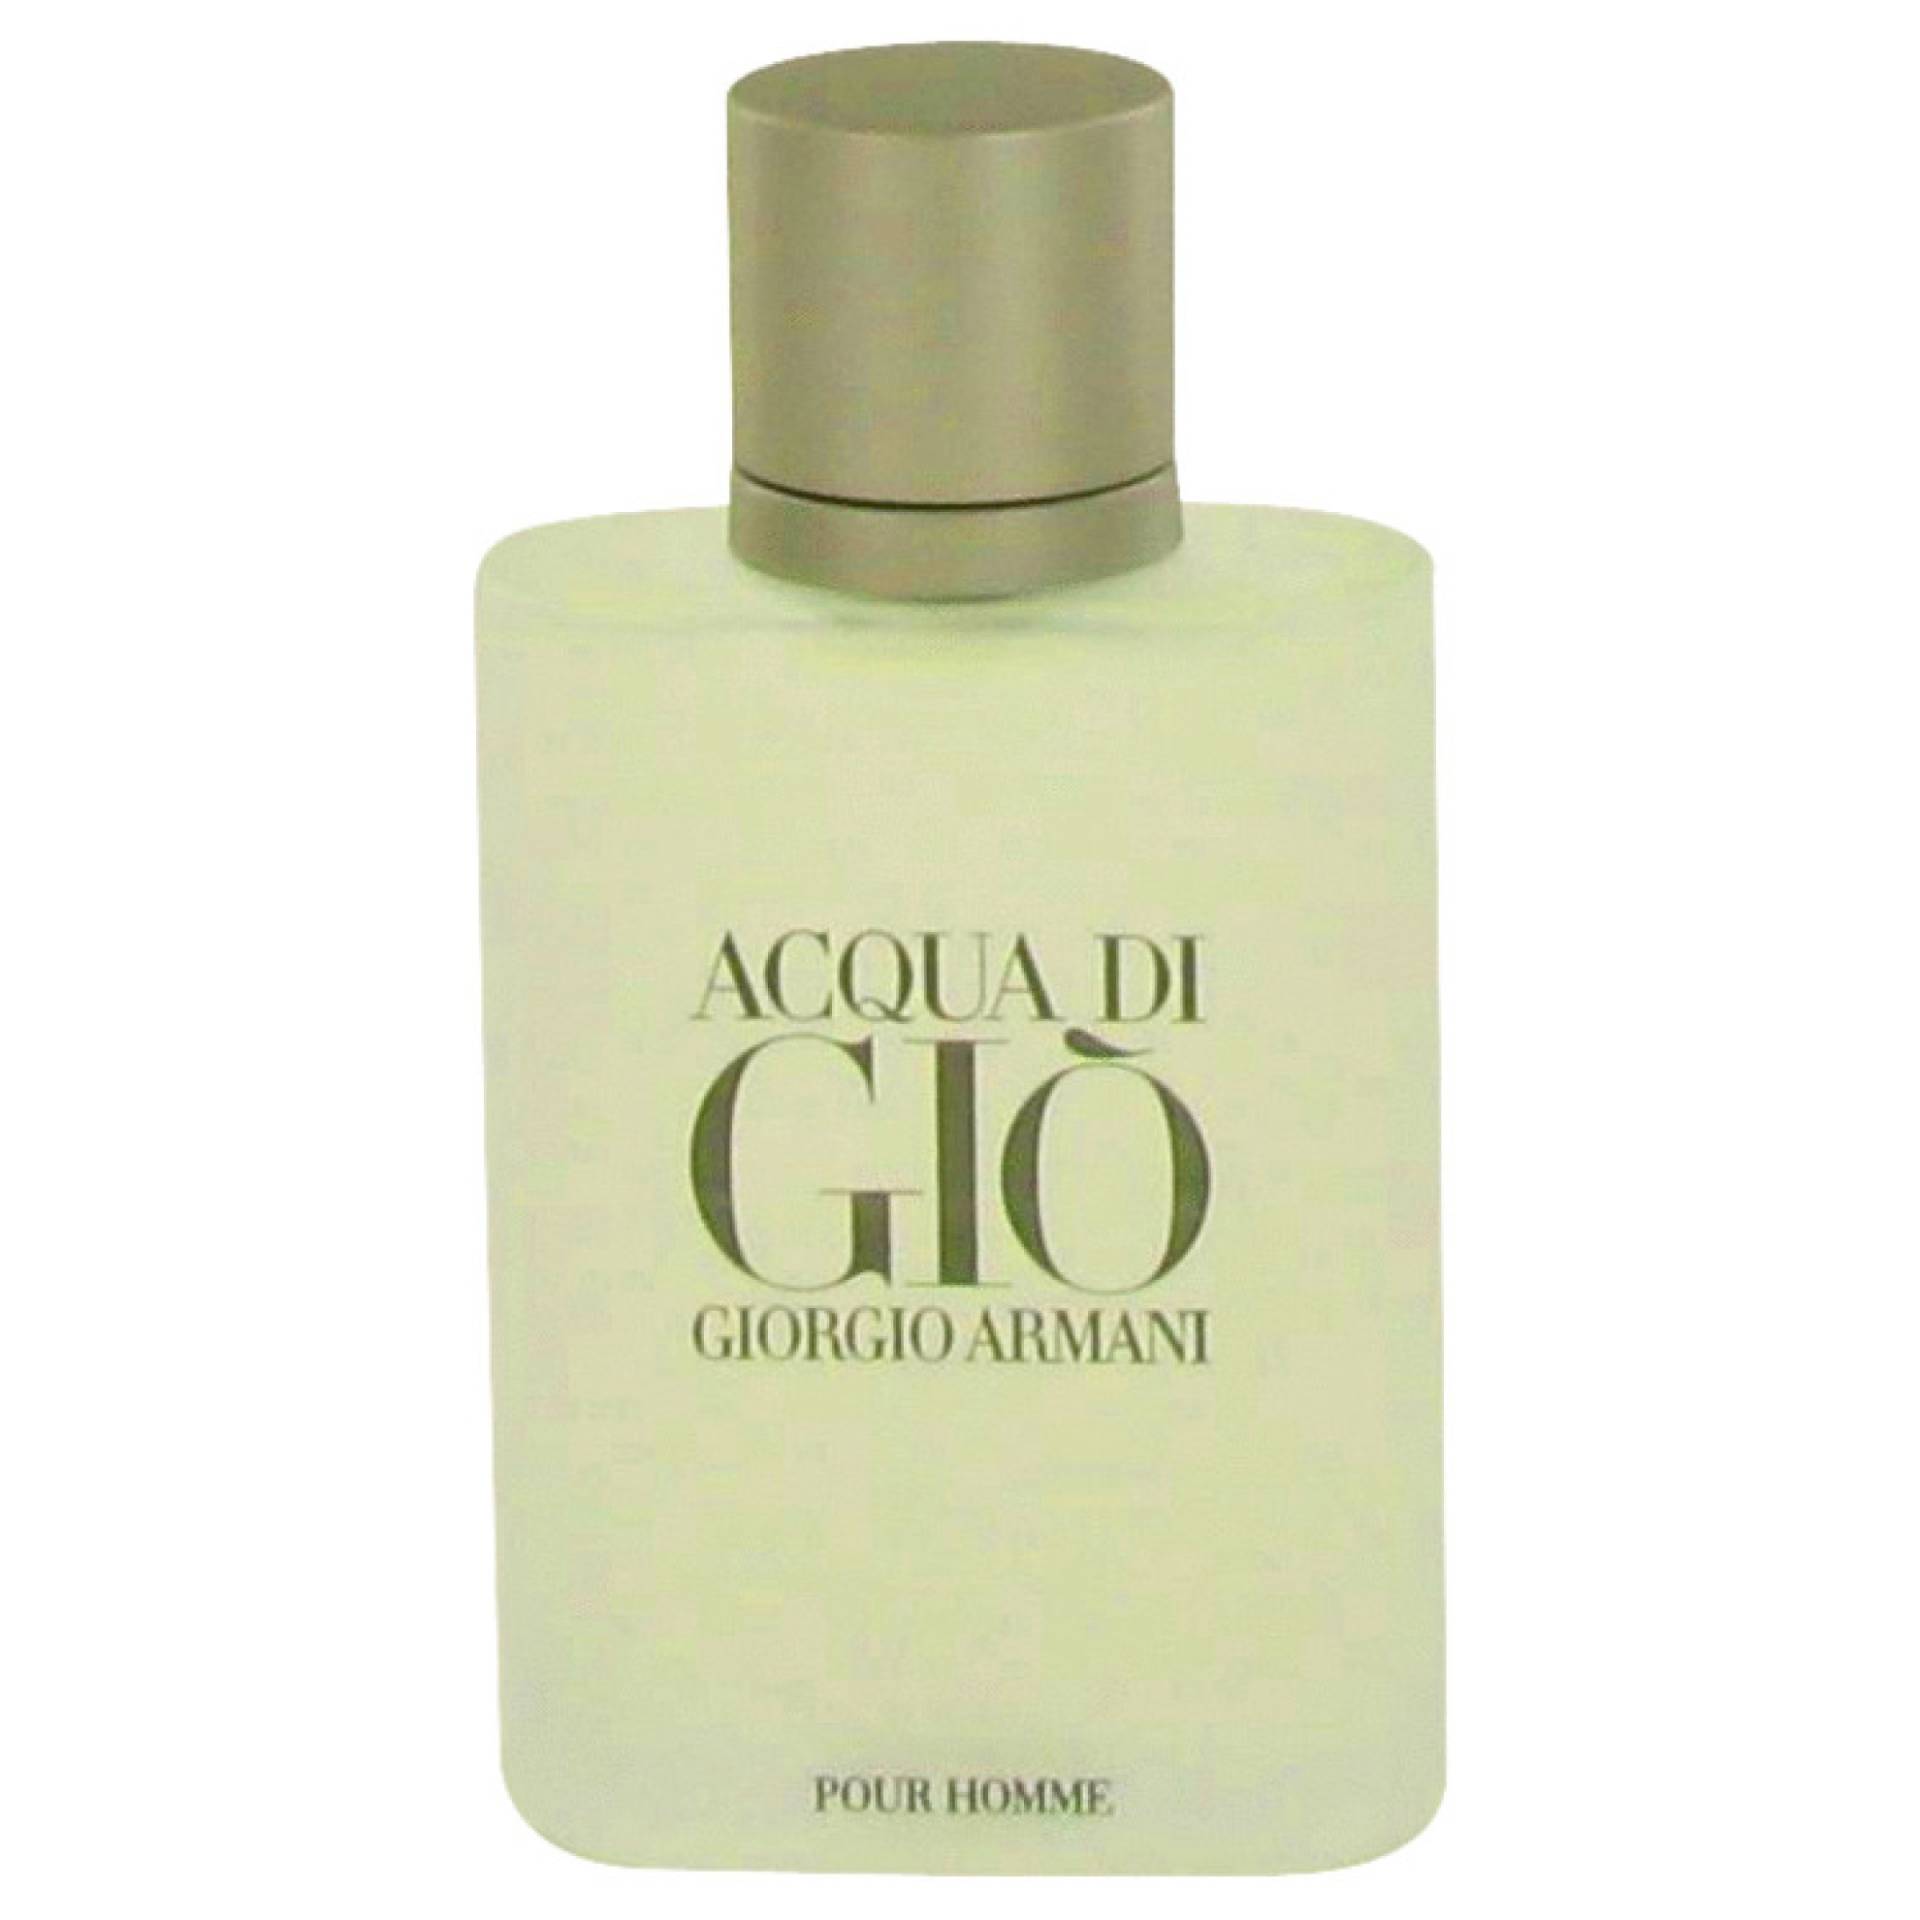 Giorgio Armani ACQUA DI GIO Eau De Toilette Spray (unboxed) 100 ml von Giorgio Armani